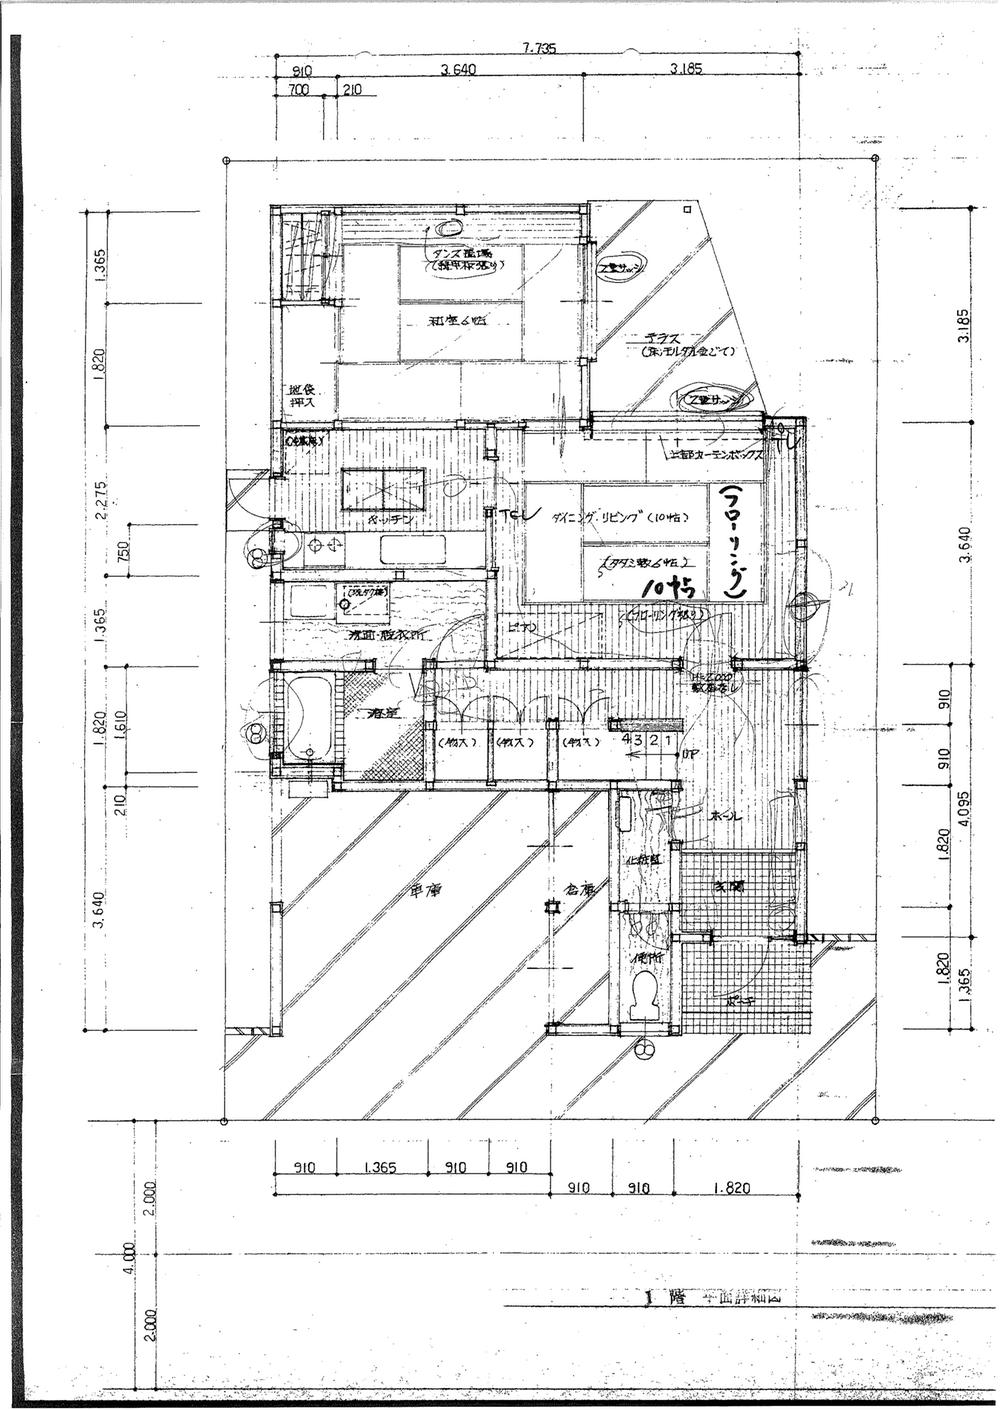 Floor plan. 13.5 million yen, 3LDK, Land area 136.99 sq m , Building area 130.71 sq m